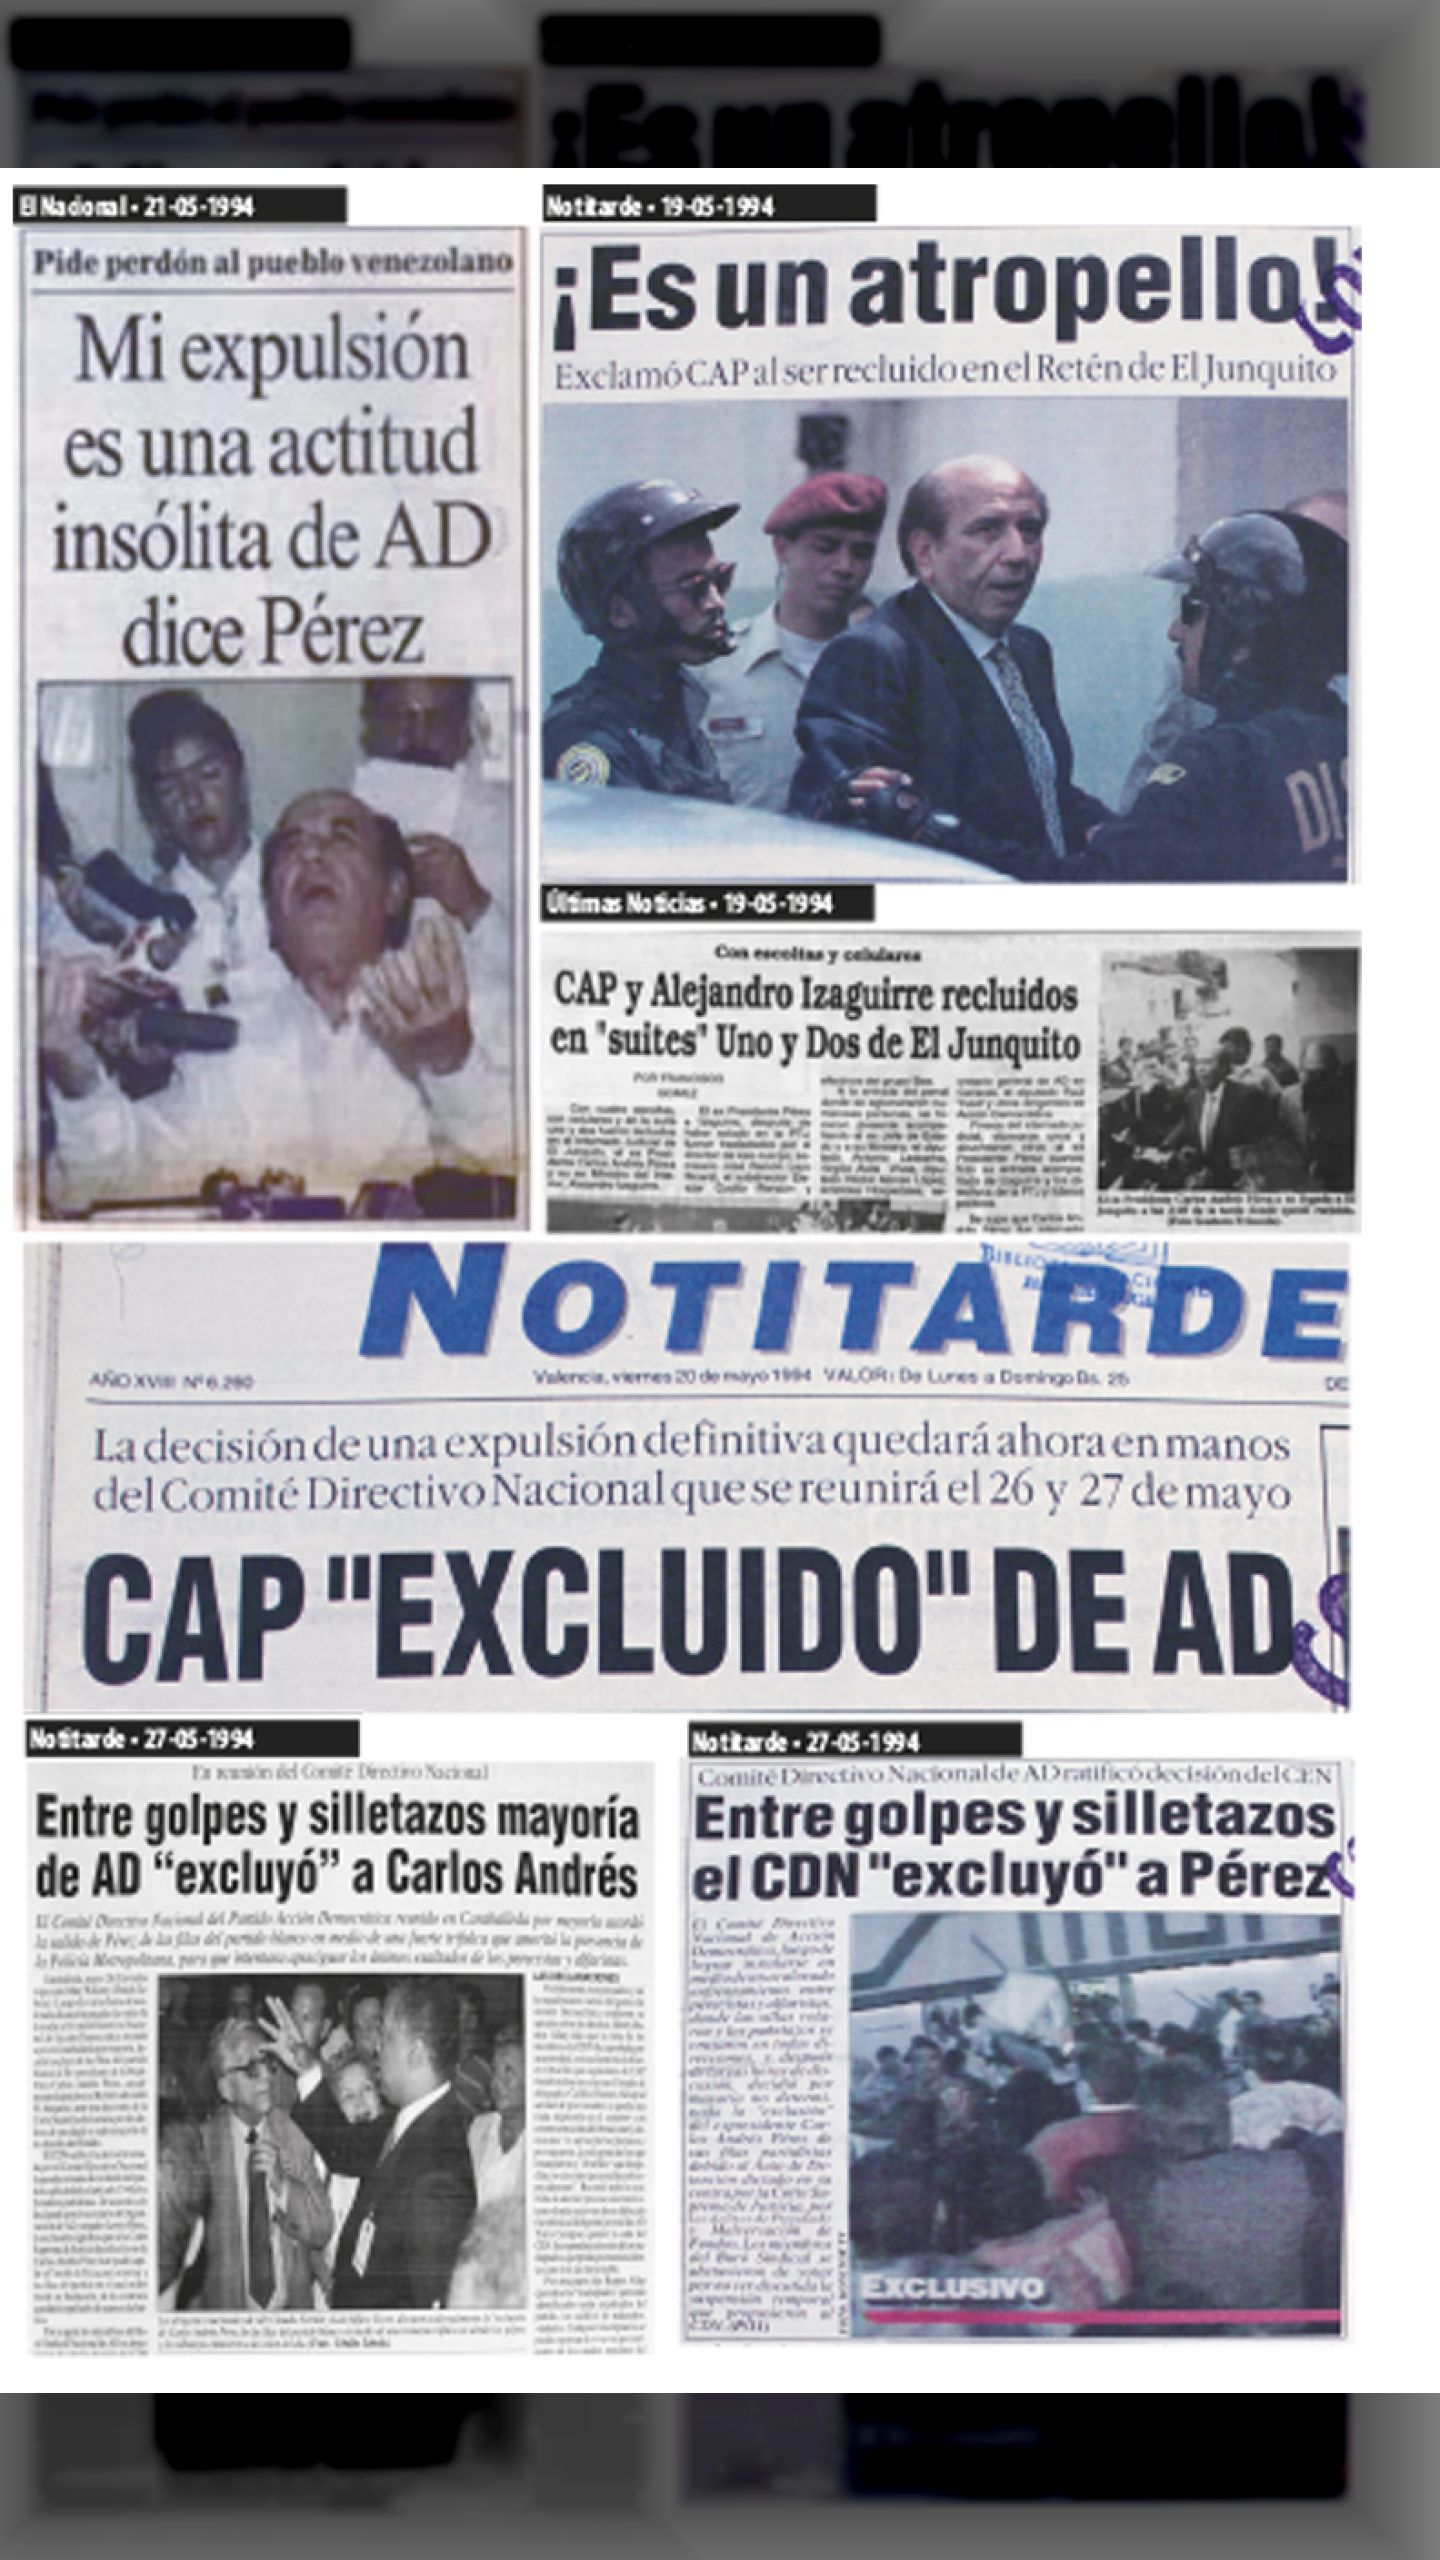 CAP PRESO Y EXPULSADO DE AD (EL NACIONAL-NOTI TARDE-ÚLTIMAS NOTICIAS - 21 DE MAYO 1994)